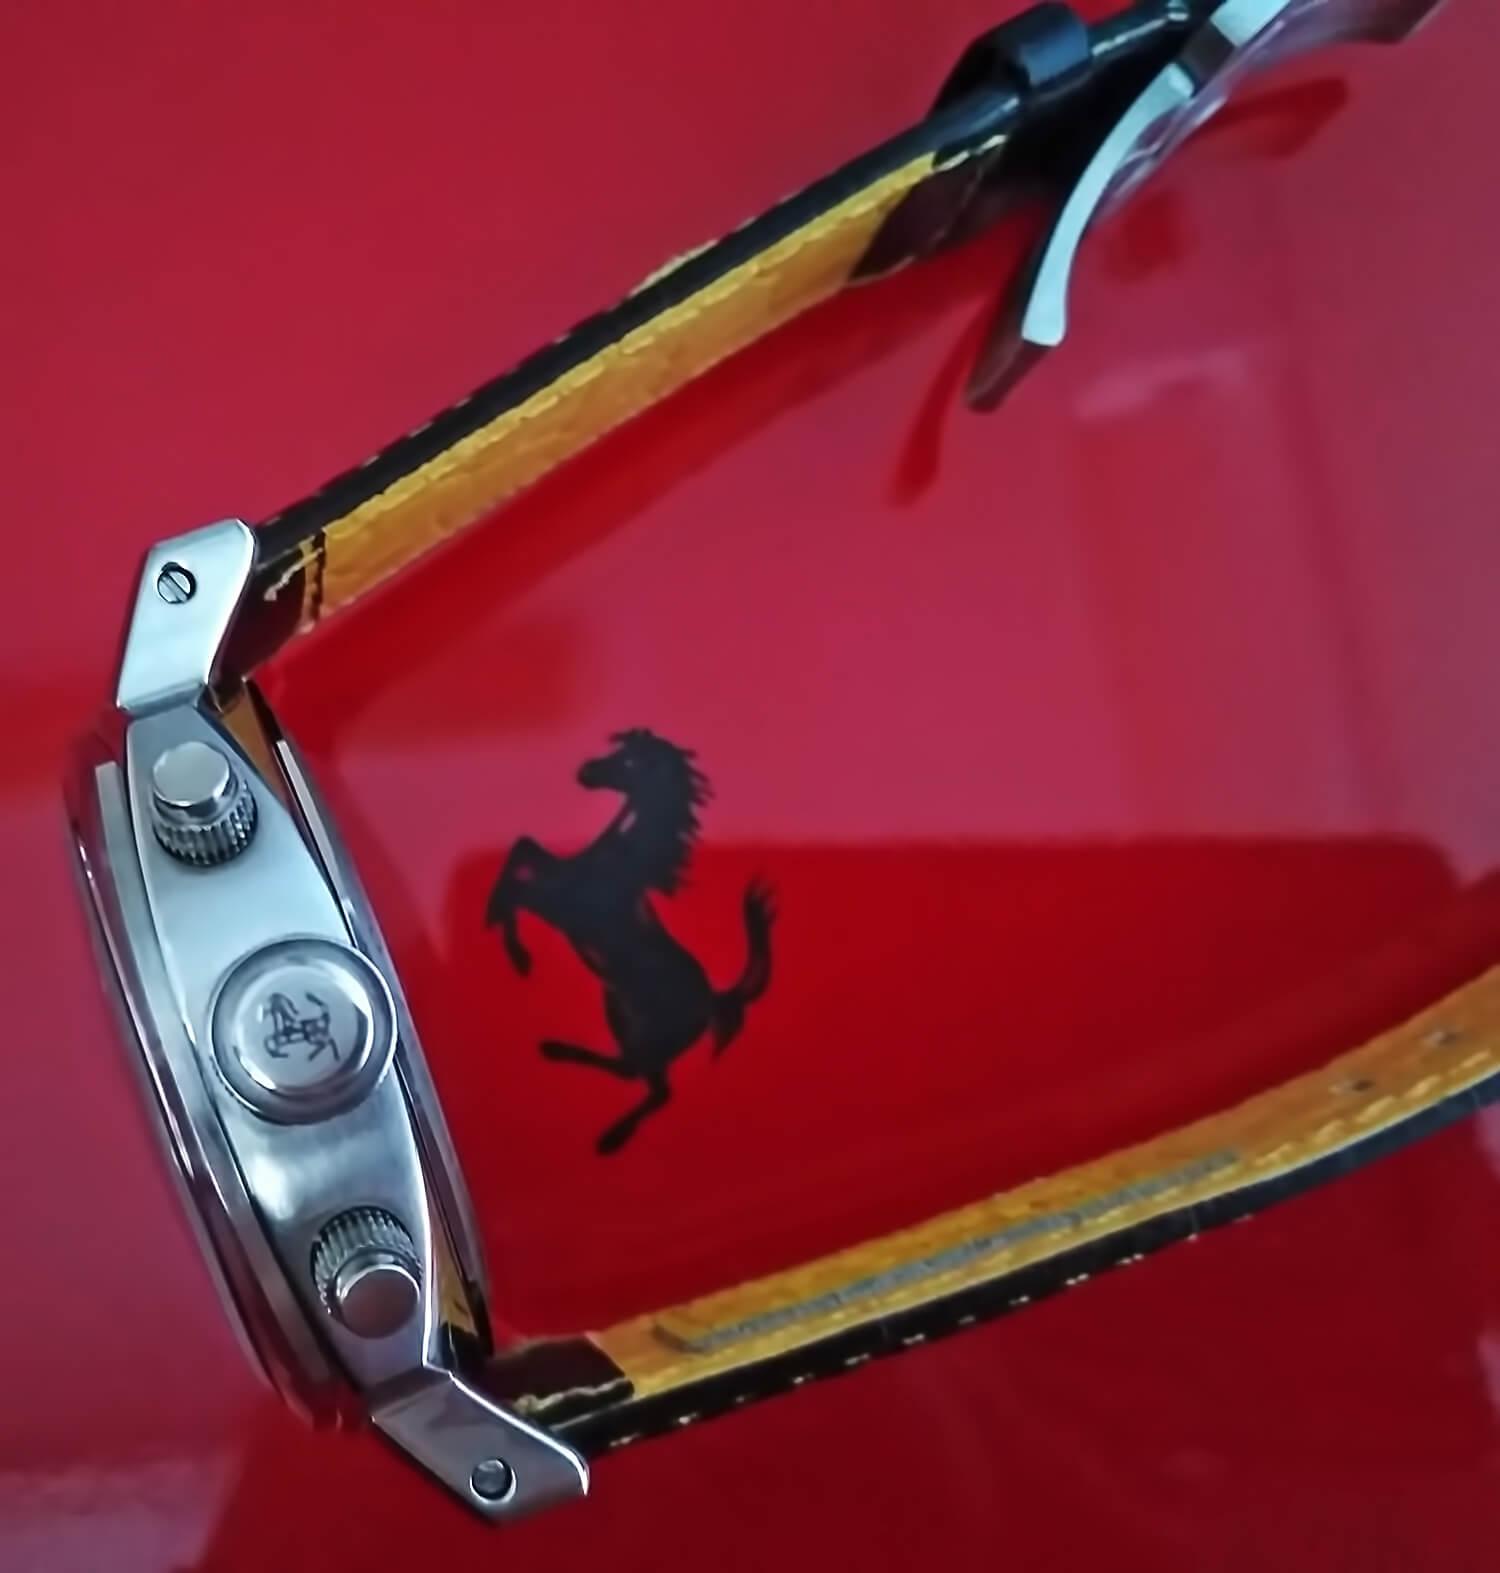 На заводной головке реплики часов Ферари нанесен логотип - скачущая лошадь